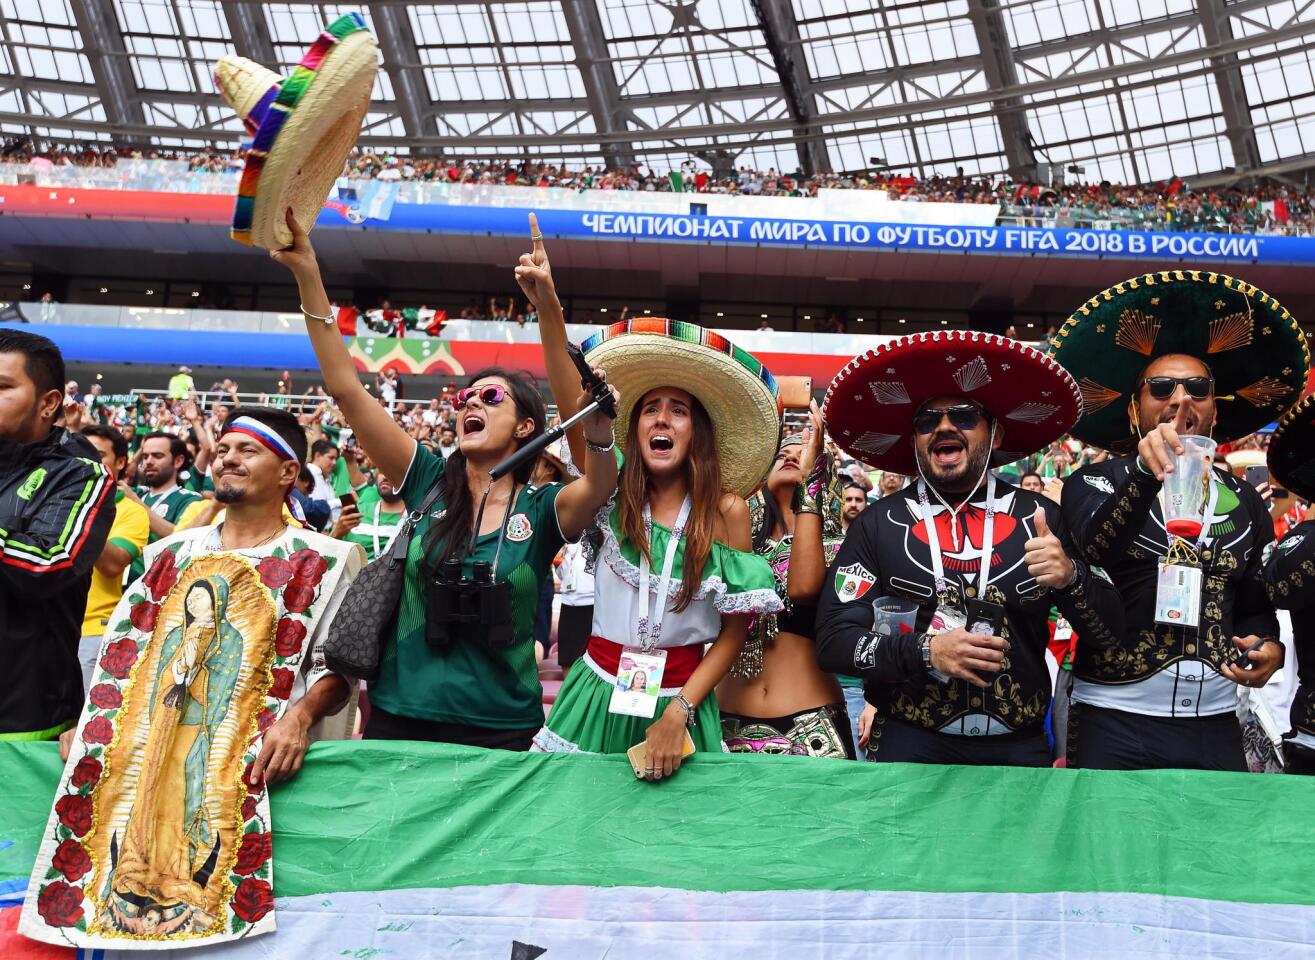 Group F Germany vs Mexico